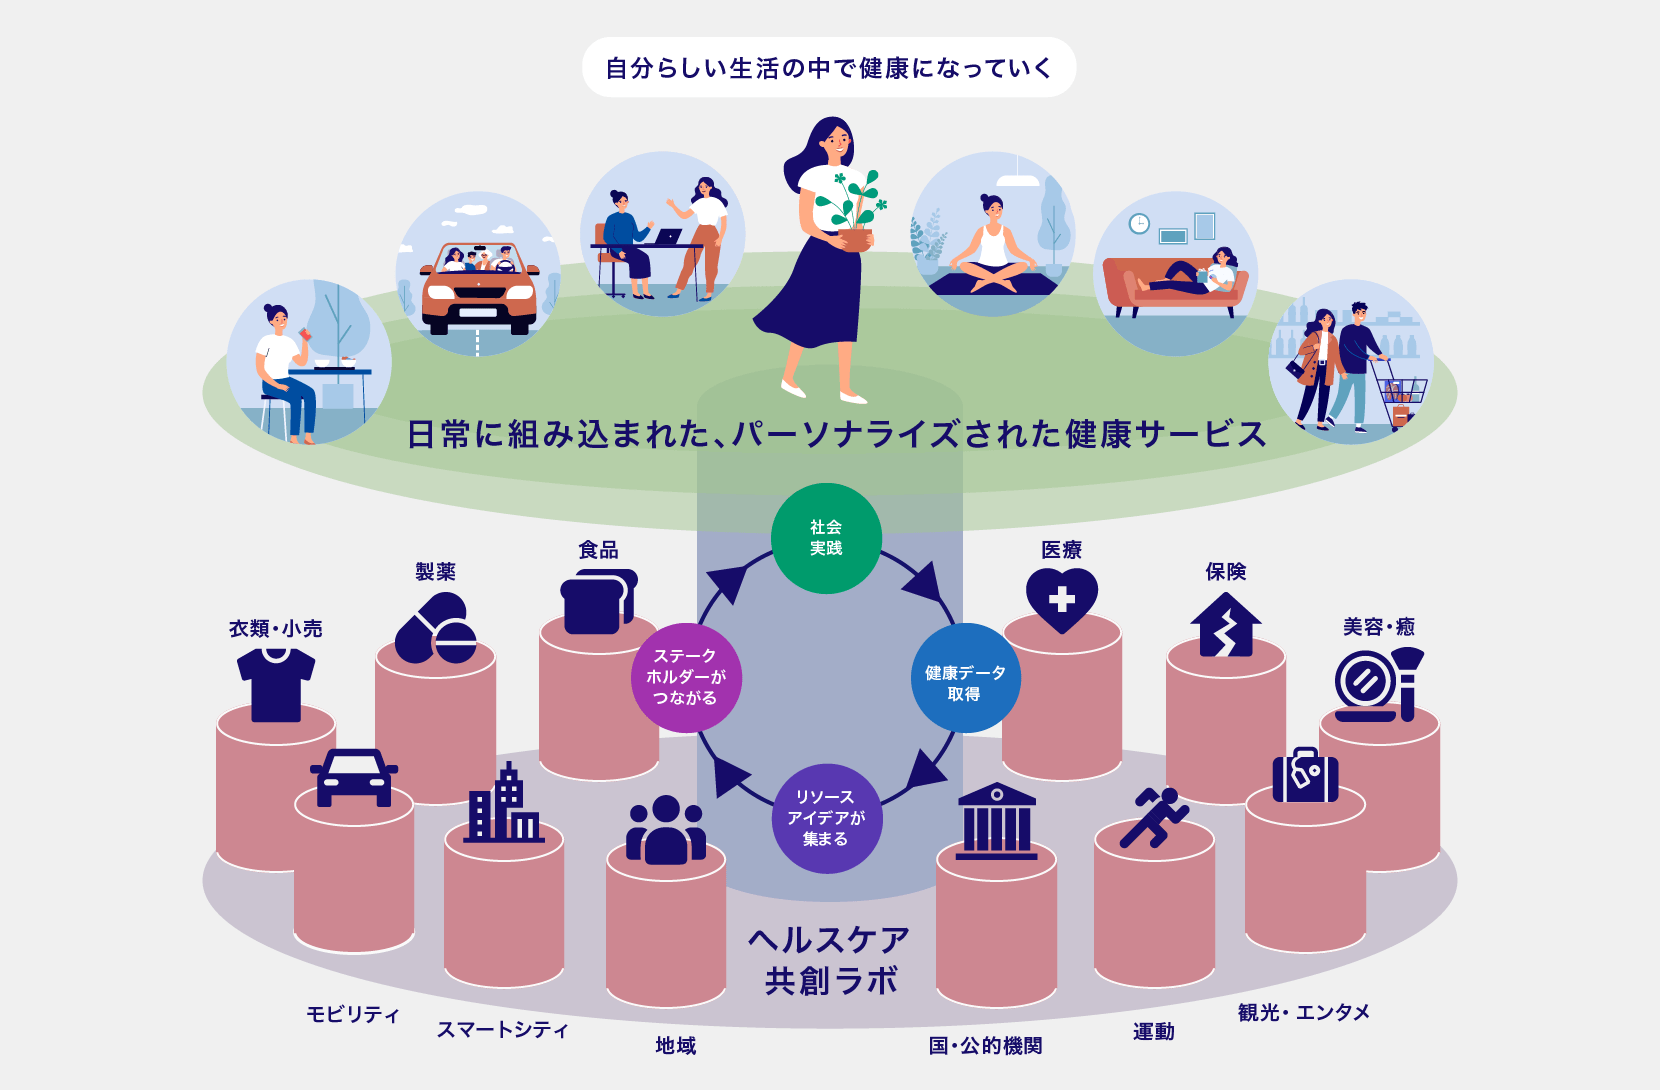 ヘルスケア共創ビジネス 関係図